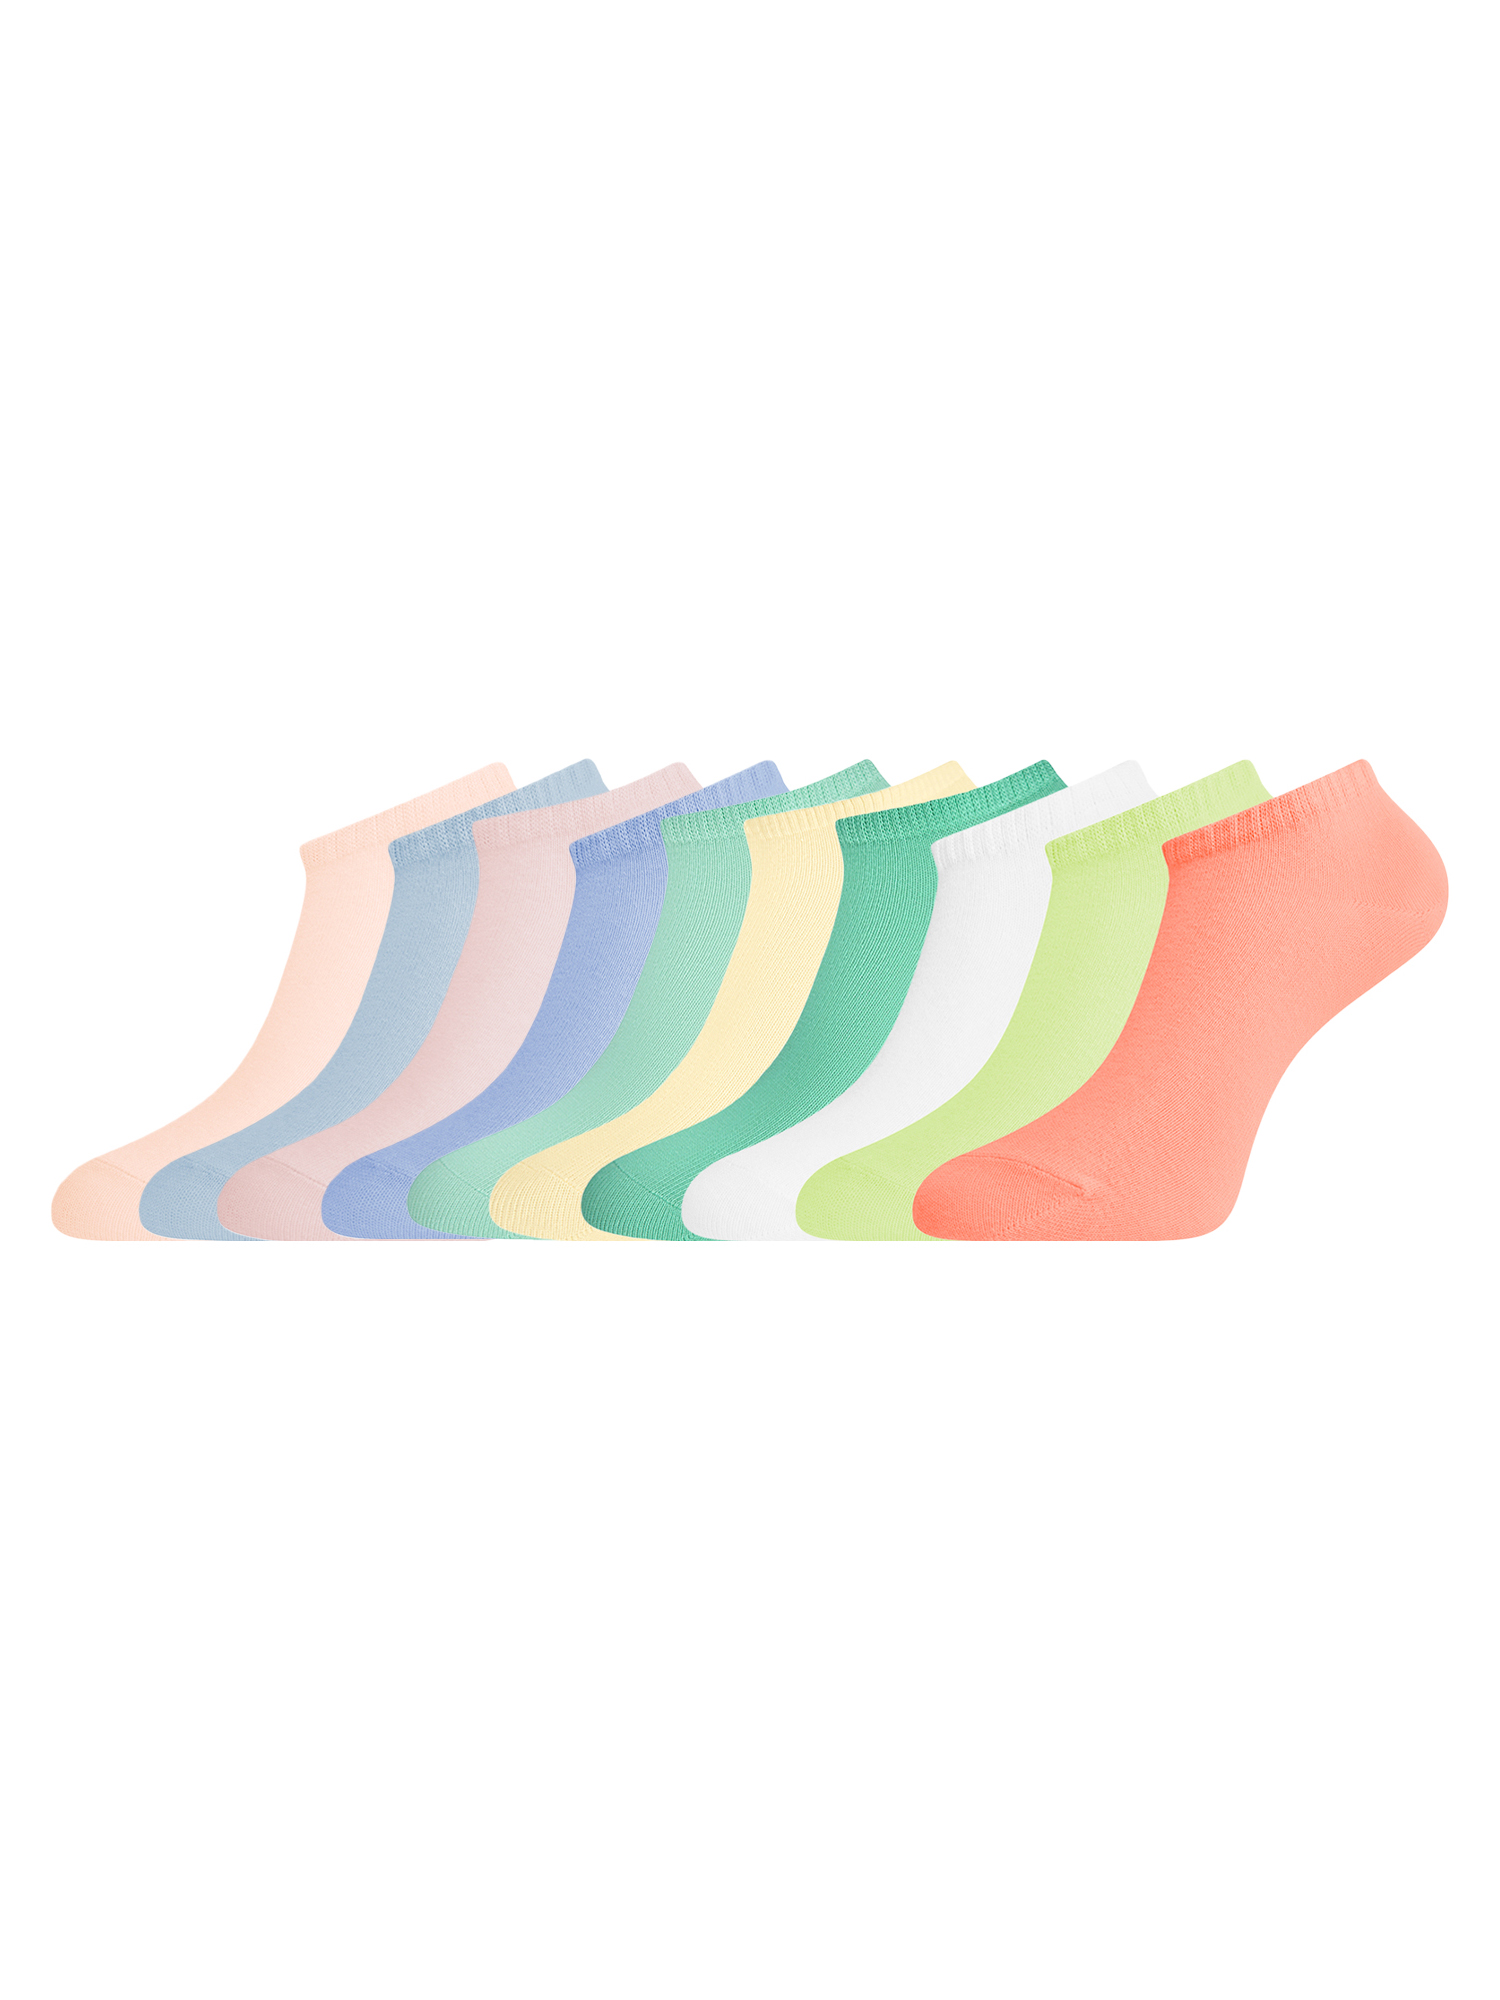 Комплект носков женских oodji 57102433T10 разноцветных 38-40